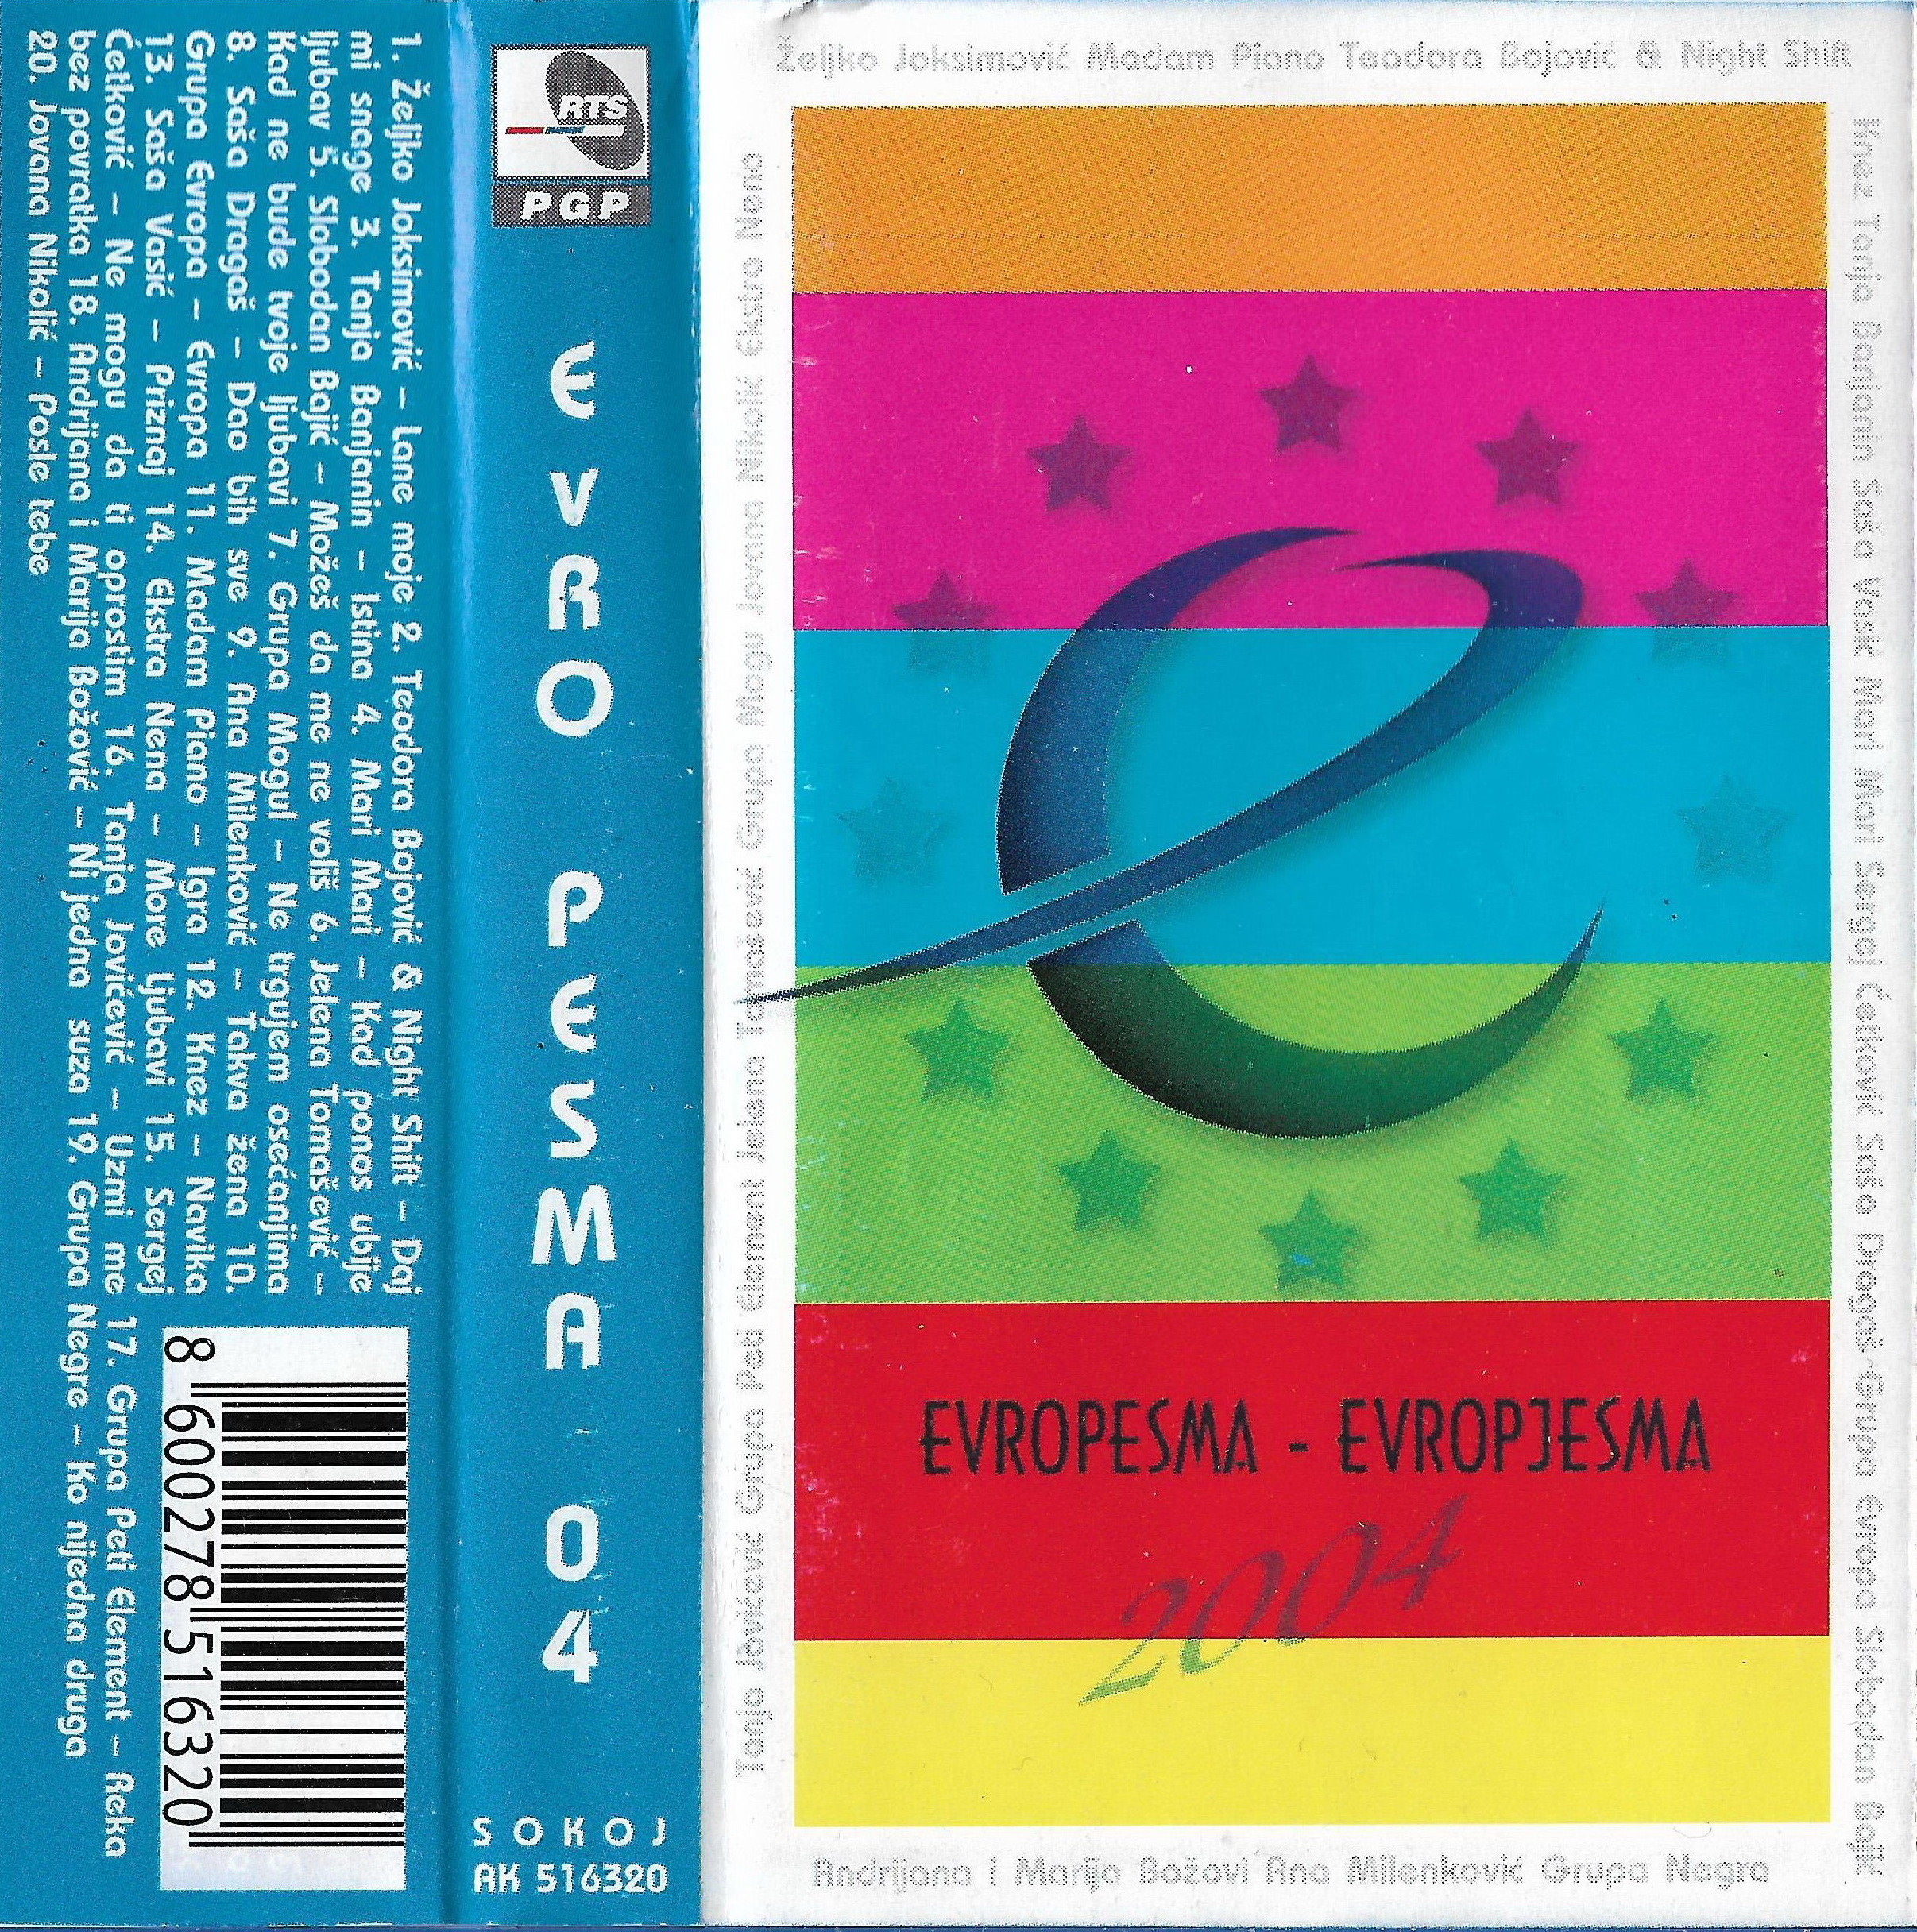 Evropesma 2004 1 c